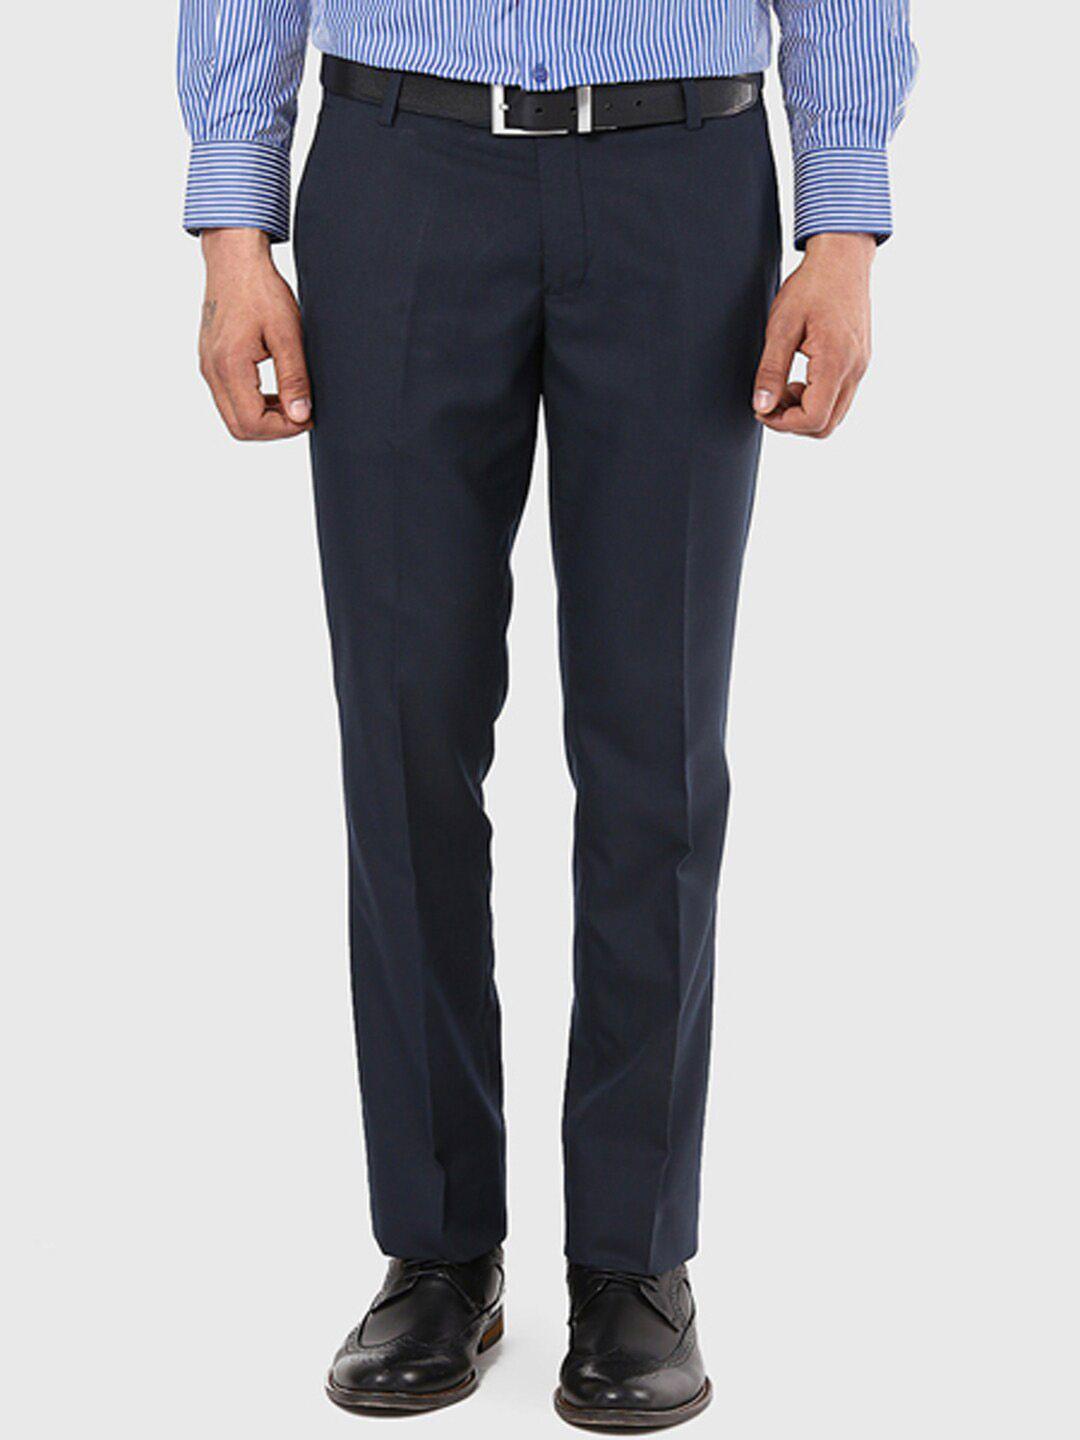 ad & av men navy blue formal classic easy wash trousers